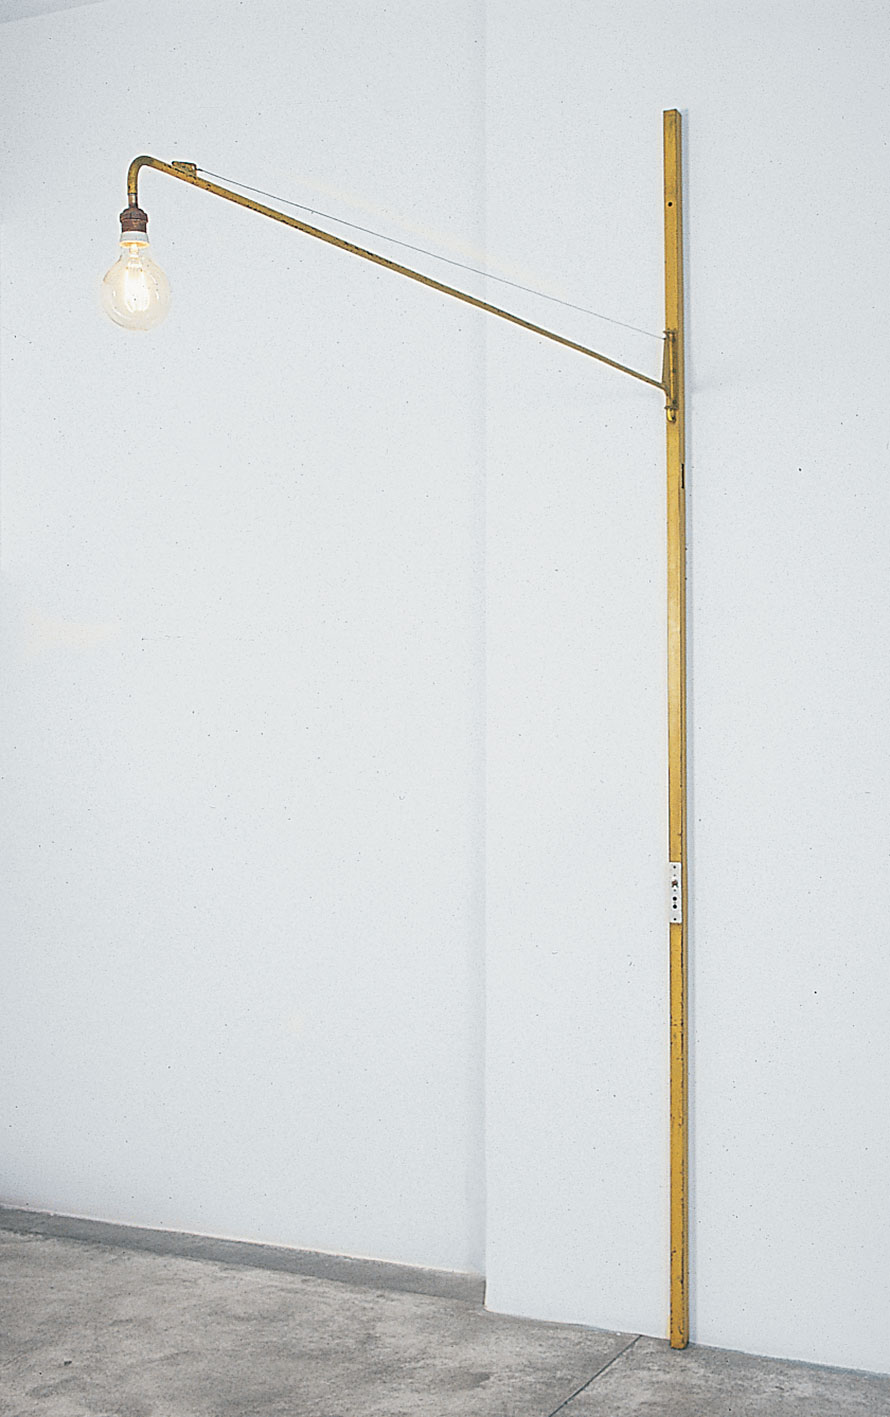 Potence d’éclairage orientable montée sur tube carré pour le passage des fils, 1948. Provenance : école de la Verrerie, Croismare.